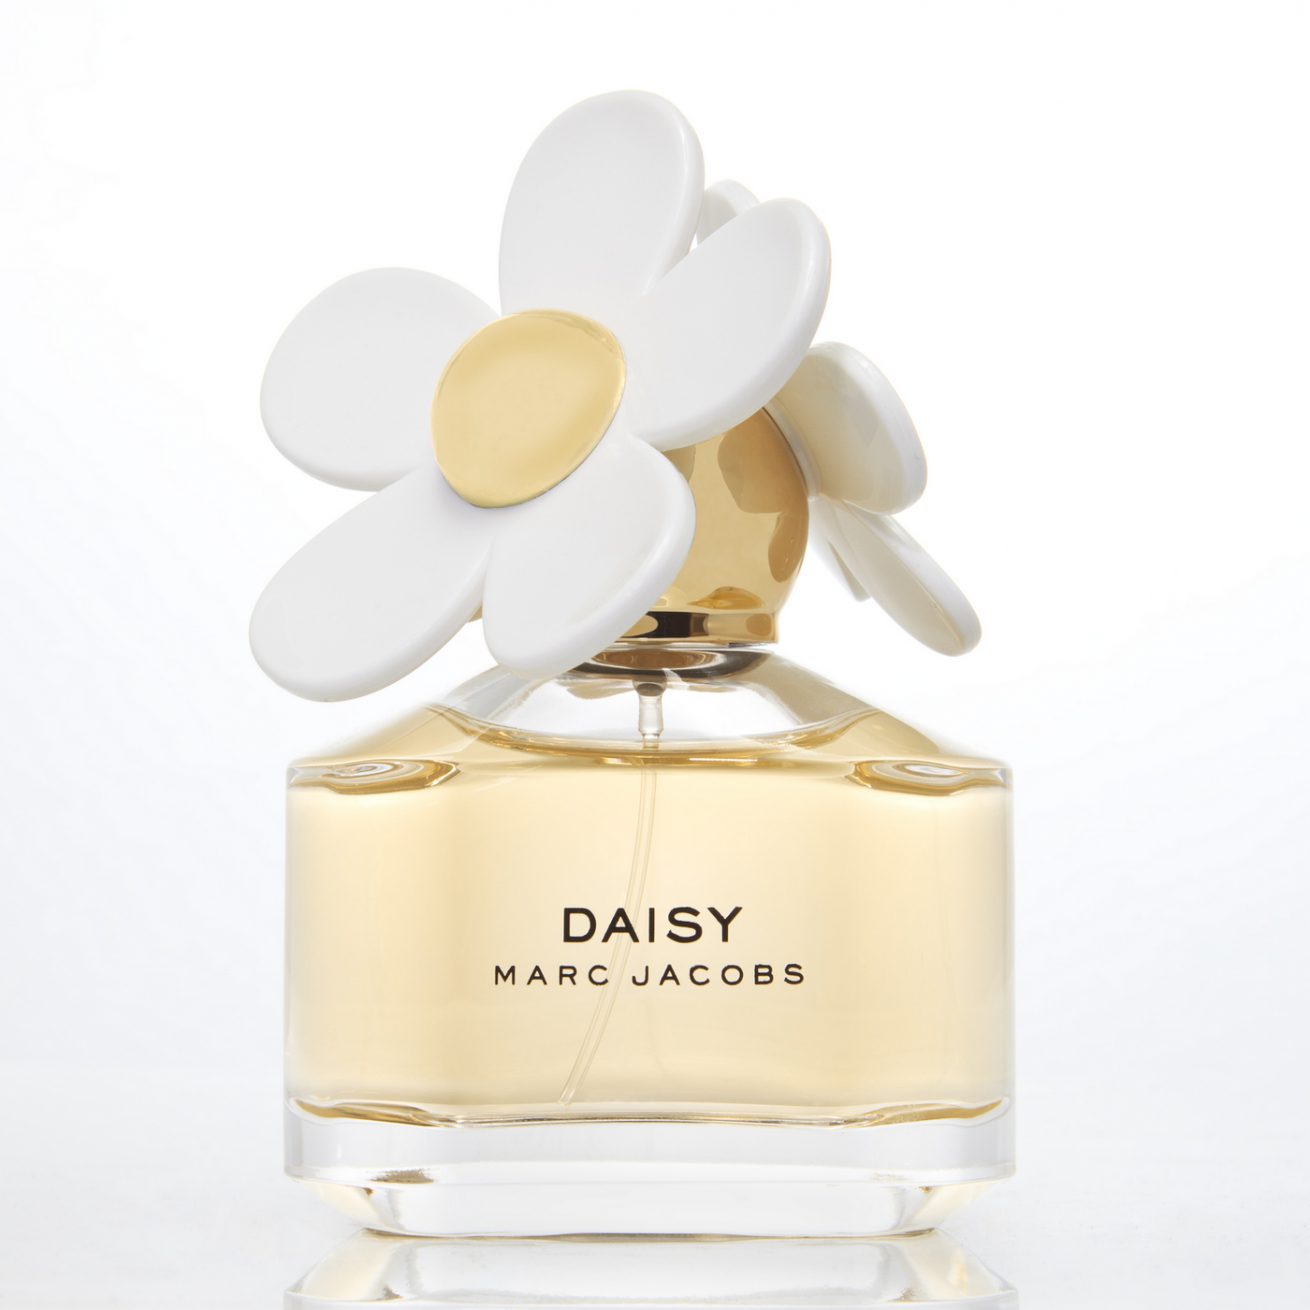 Daisy - Marc Jacobs